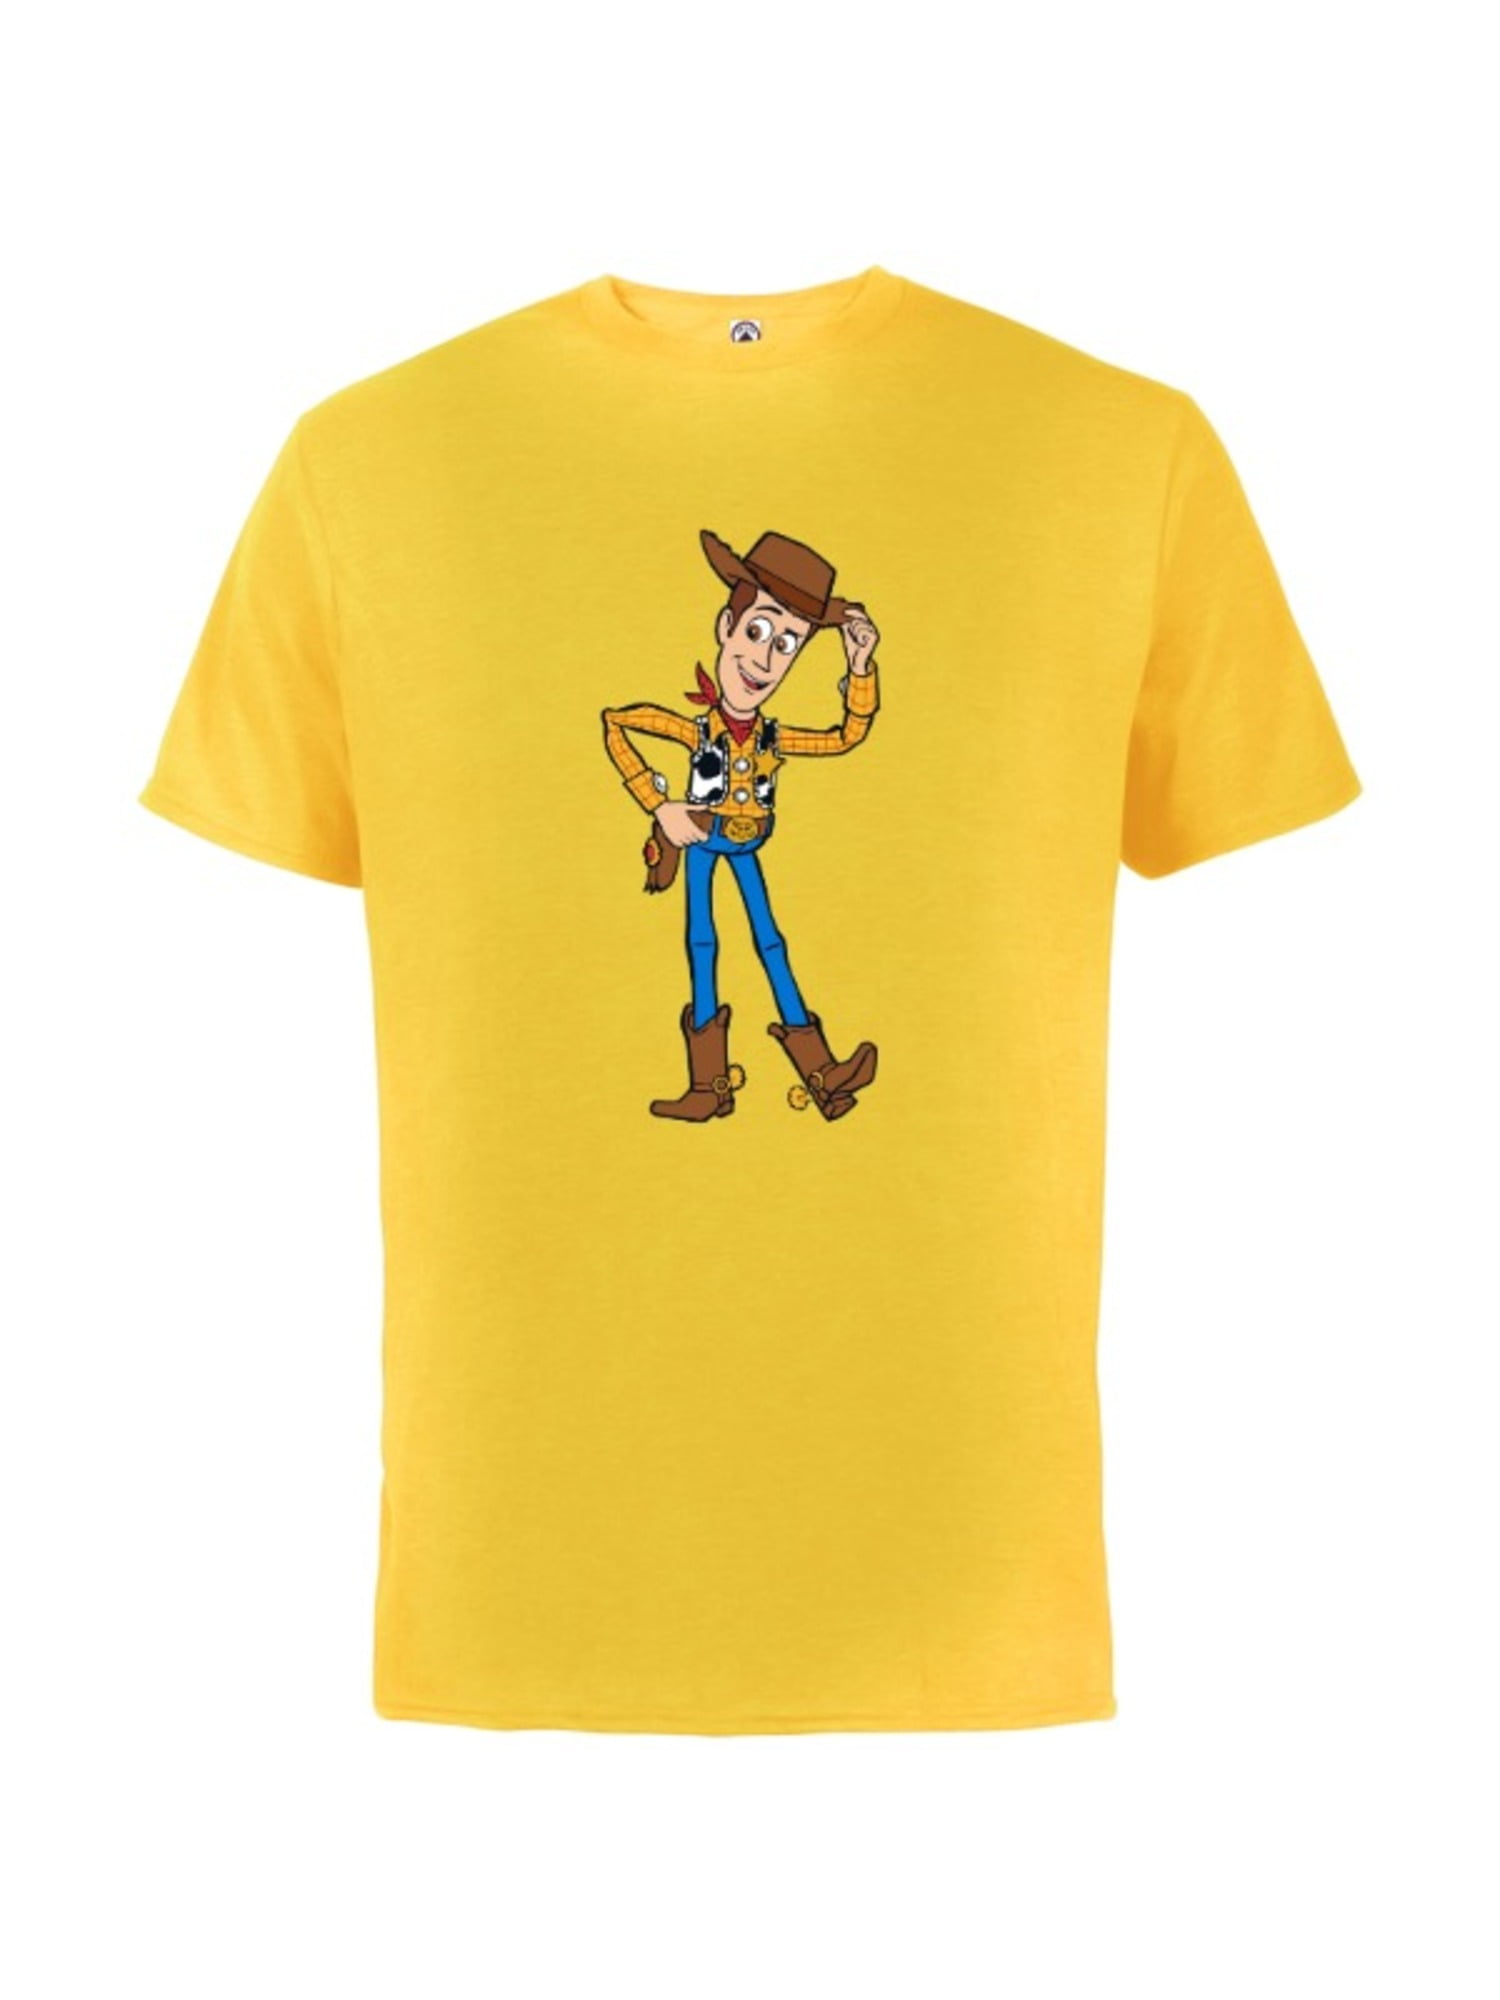 Disney Pixar Toy Story 4 Hello Woody Cowboy T-Shirt - Short Sleeve ...